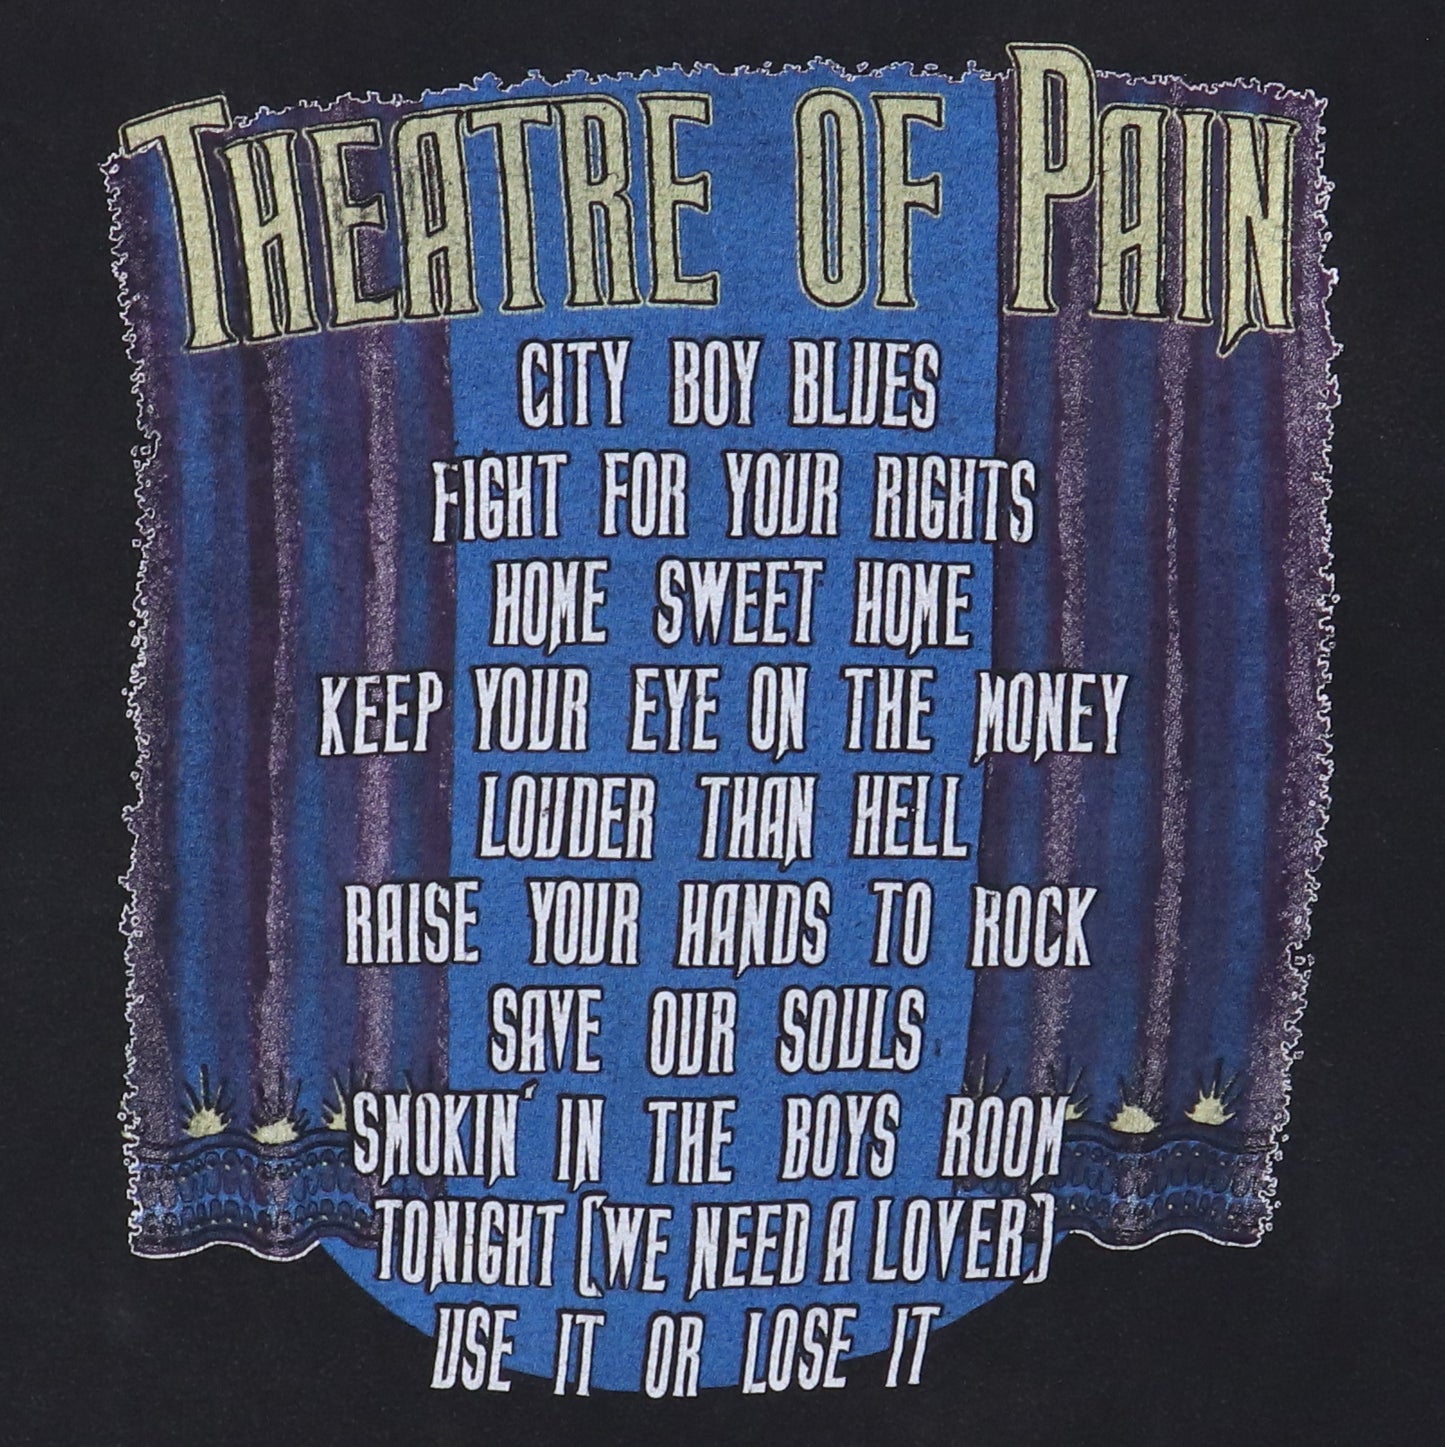 1985 Motley Crue Theatre Of Pain Shirt